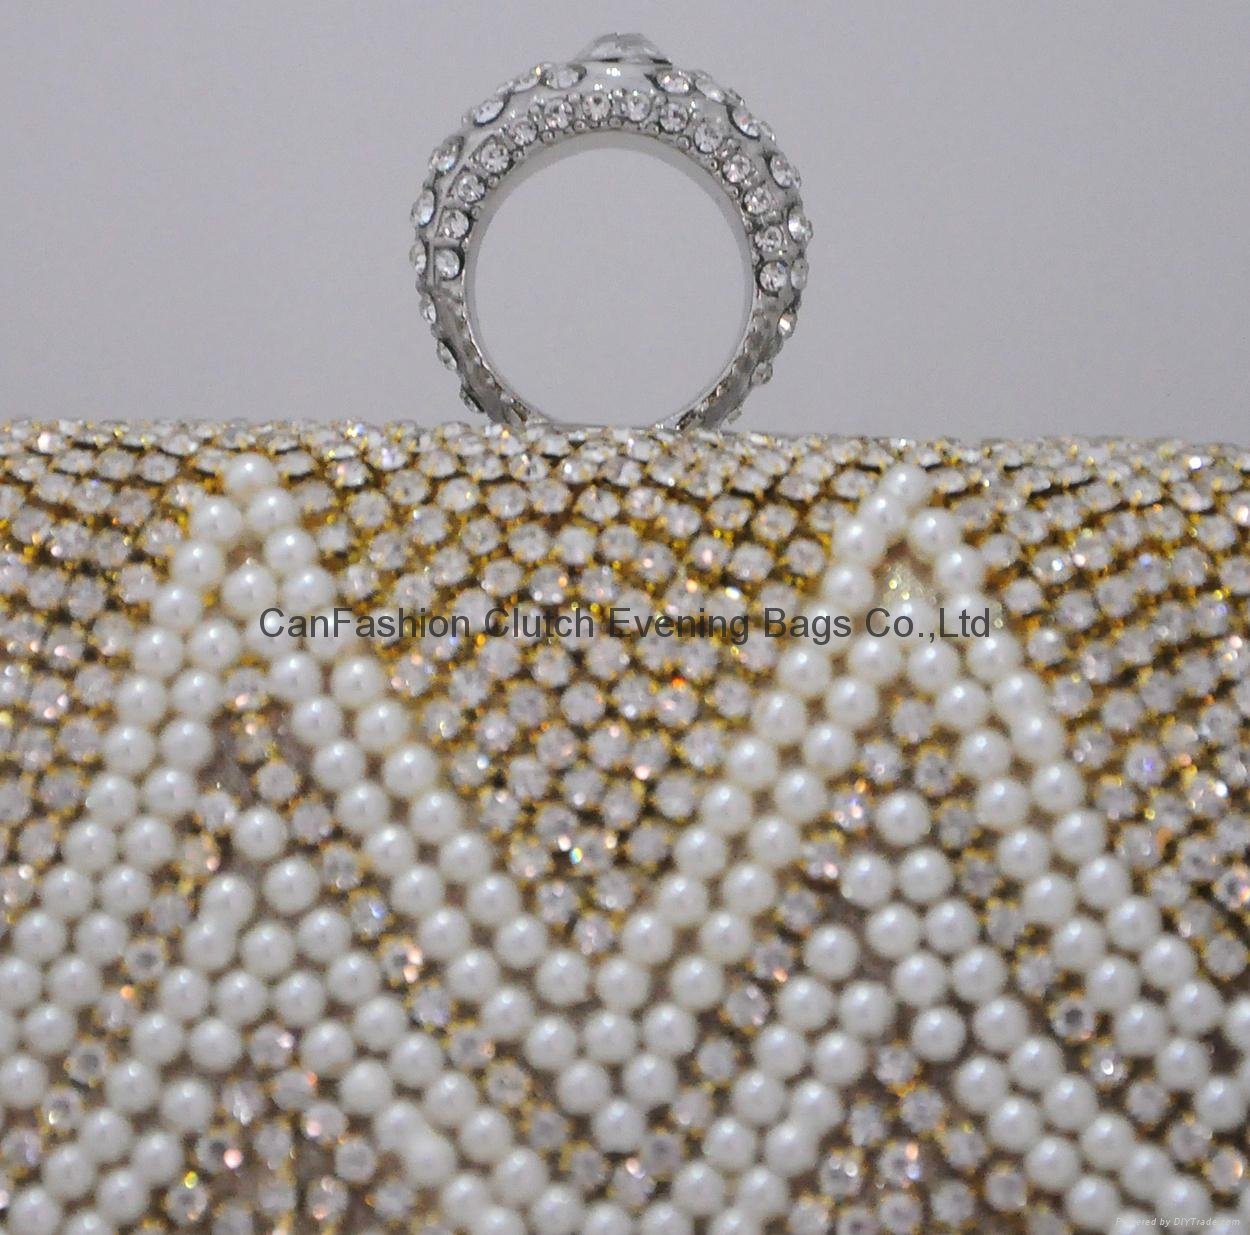  Ladies Fashion Evening Bag bridal handbags, crystal evening hangbags 5